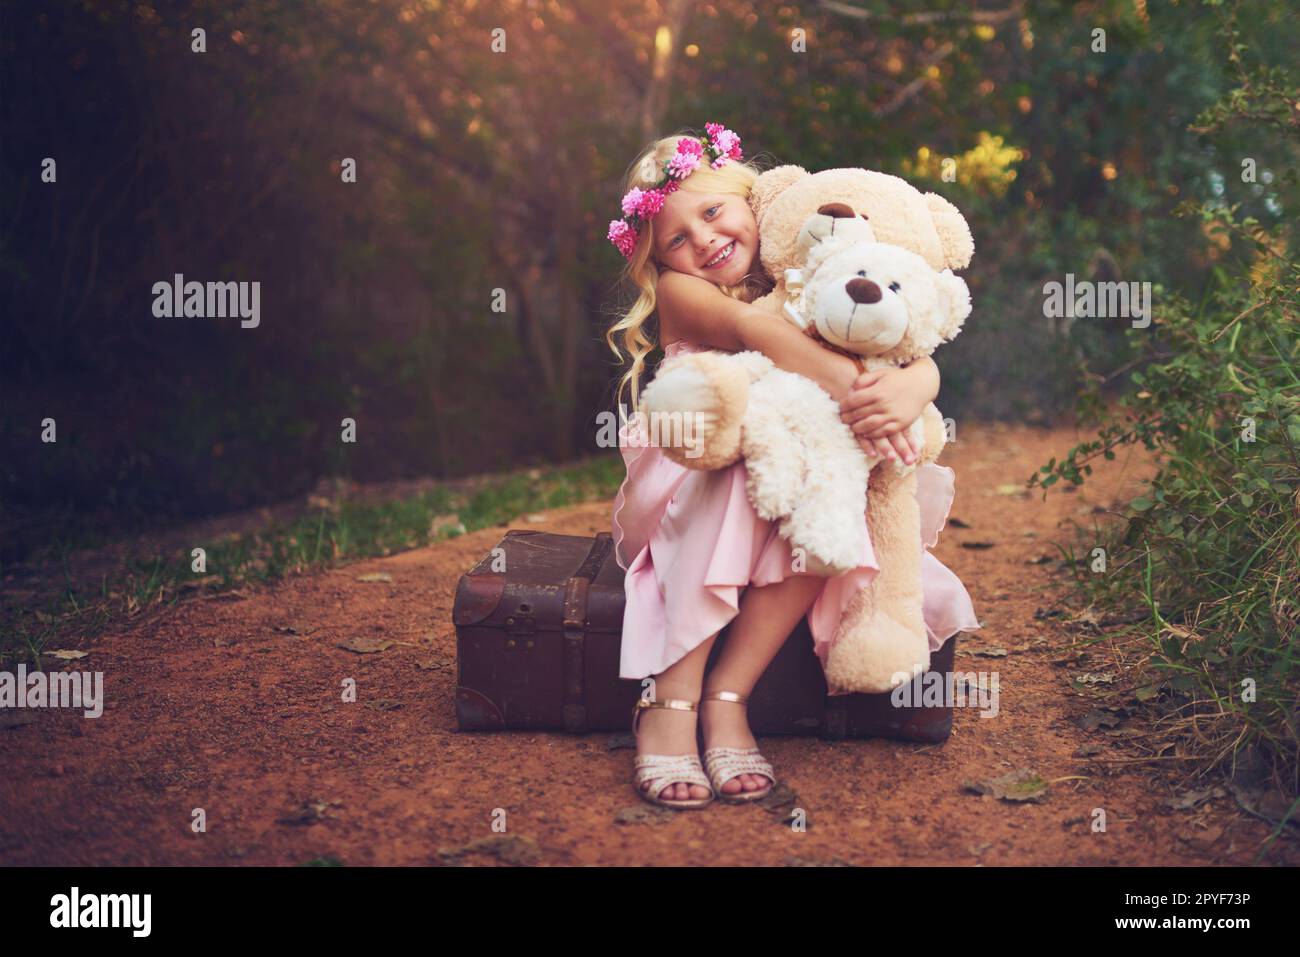 Je suis heureux tant qu'ils sont là. une petite fille heureuse assise et attendant avec ses ours en peluche au milieu d'une route de terre. Banque D'Images